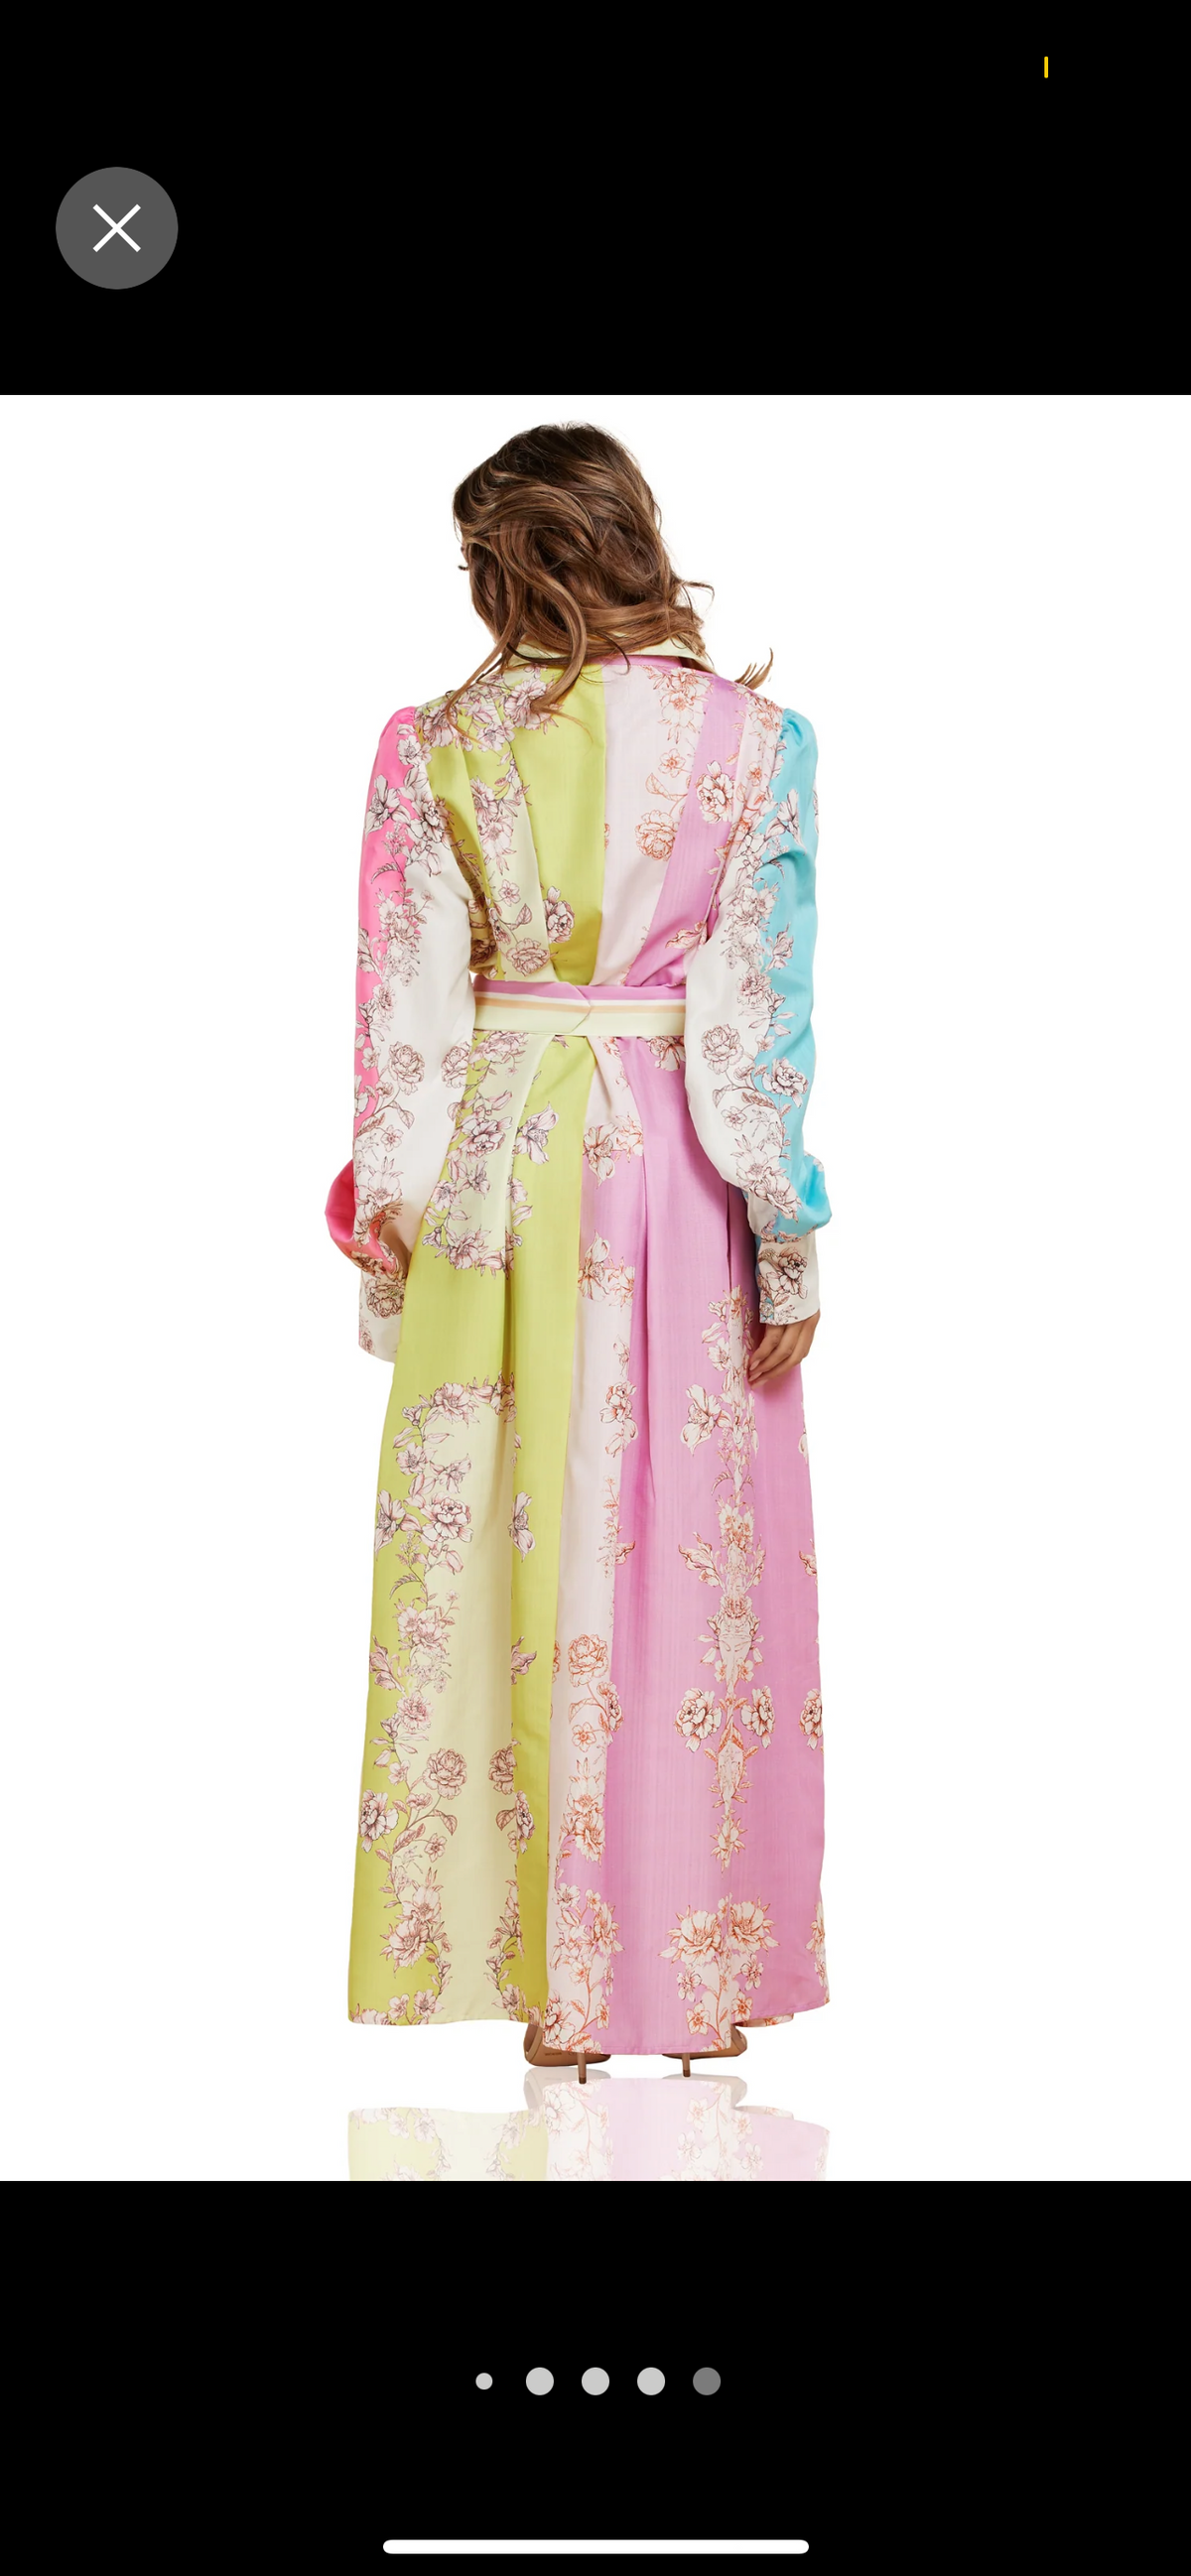 Floral print color block maxi dress.